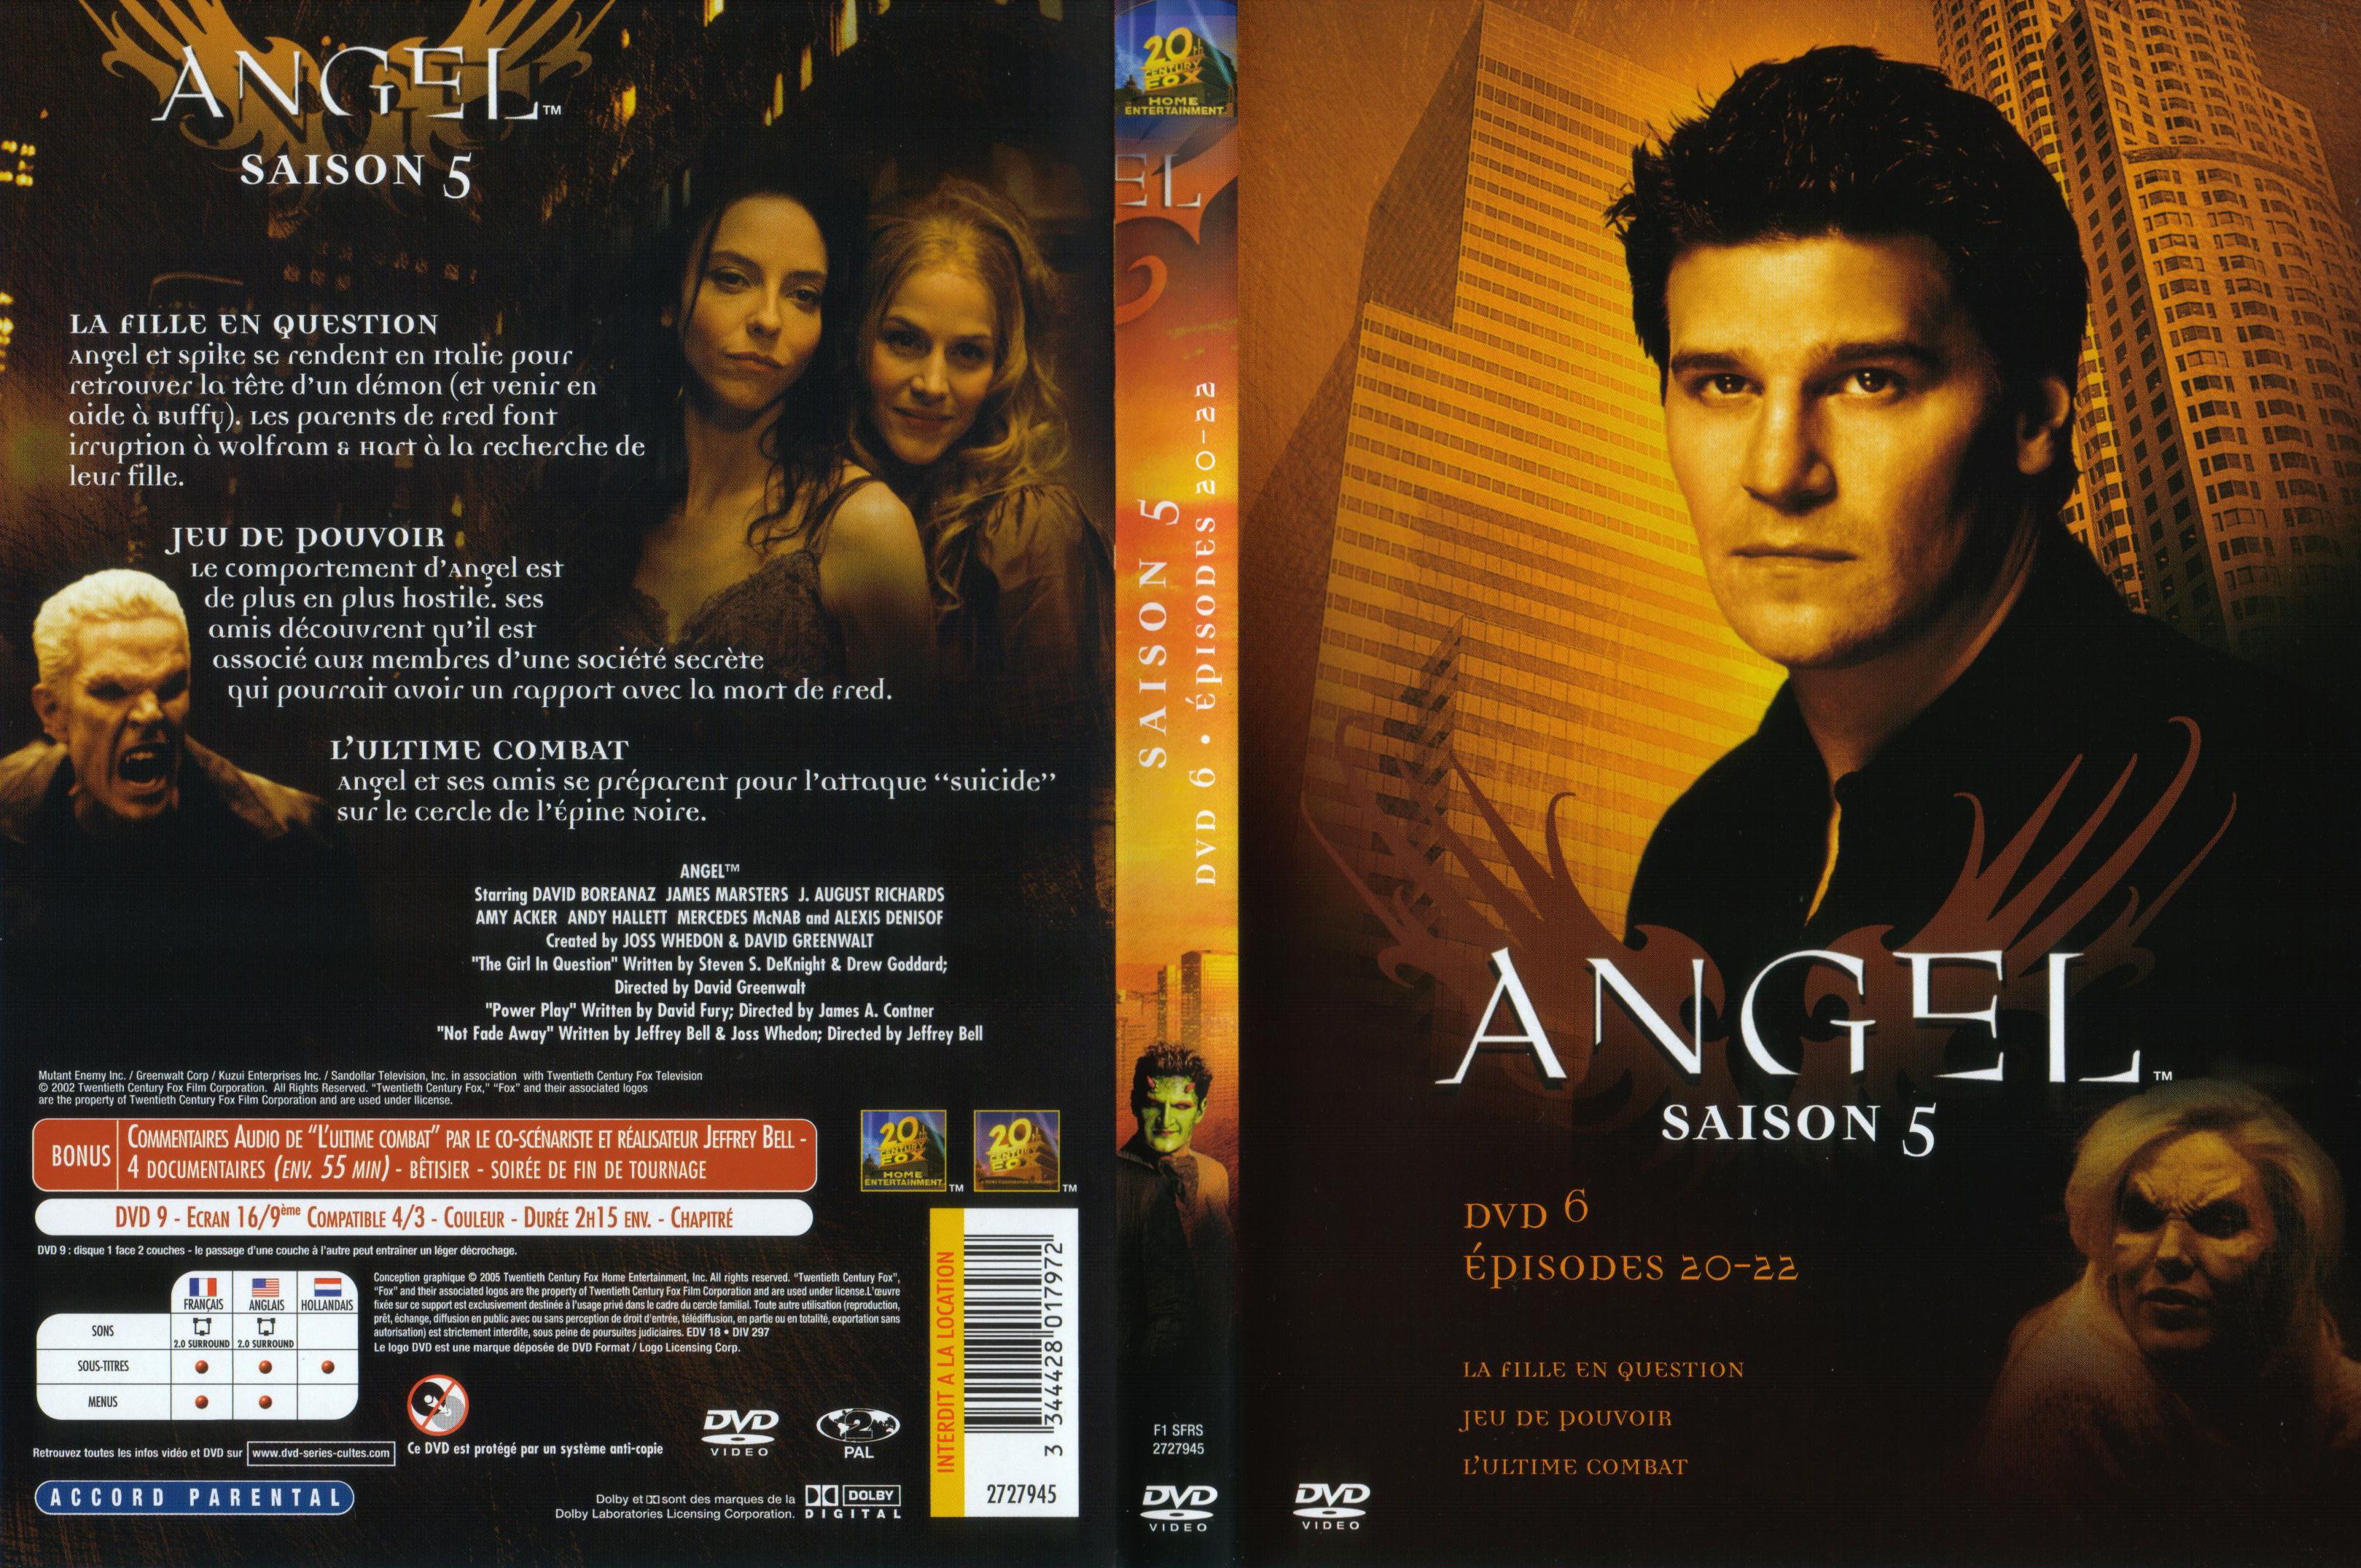 Jaquette DVD Angel Saison 5 dvd 6